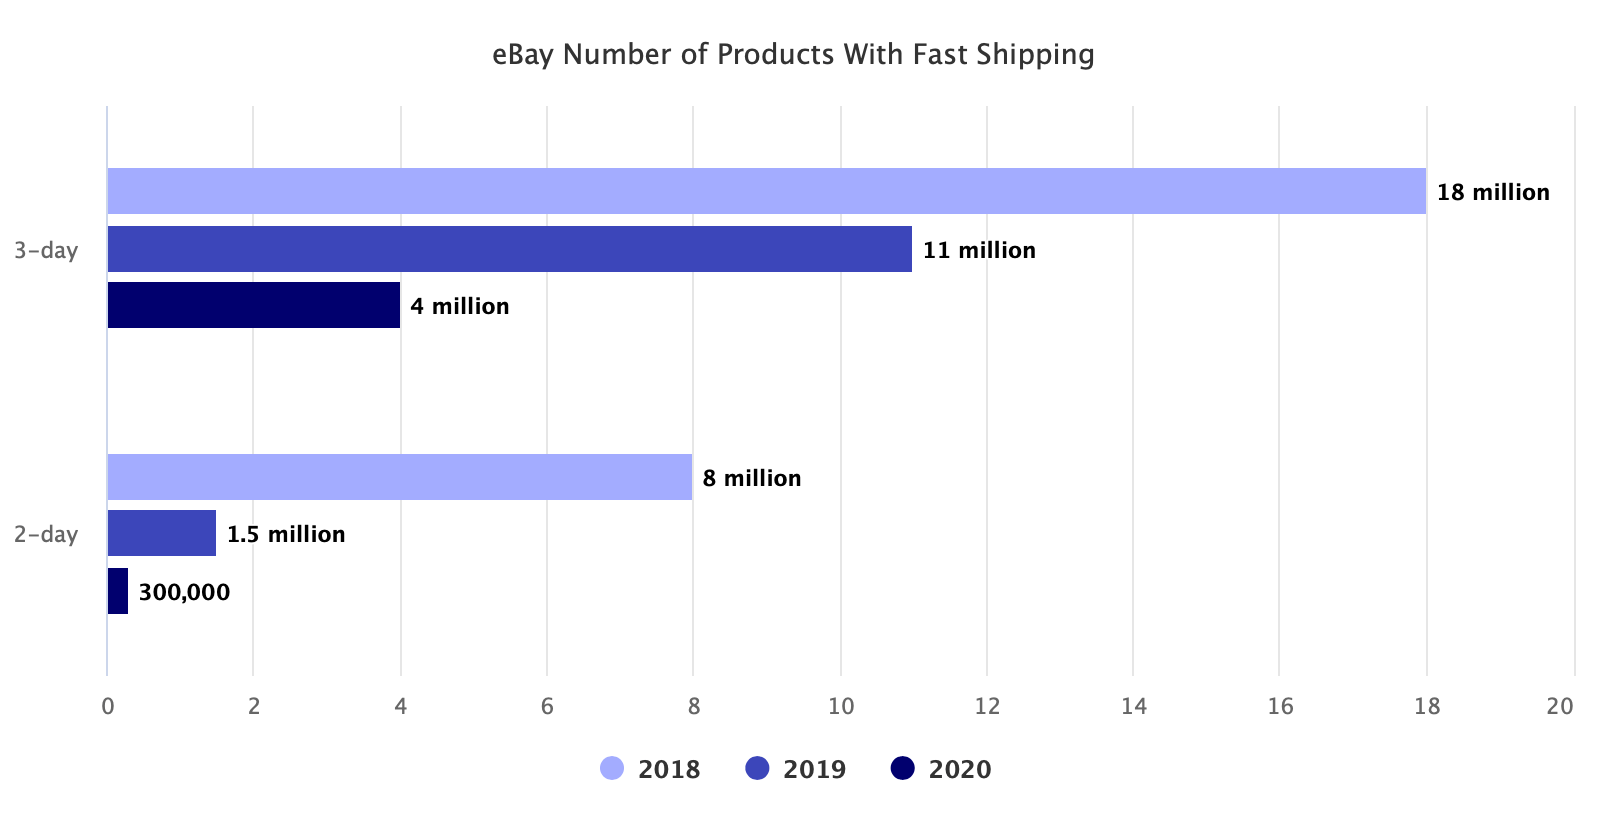 电商平台怎么回事？eBay平台提供快速配送的产品大幅减少！